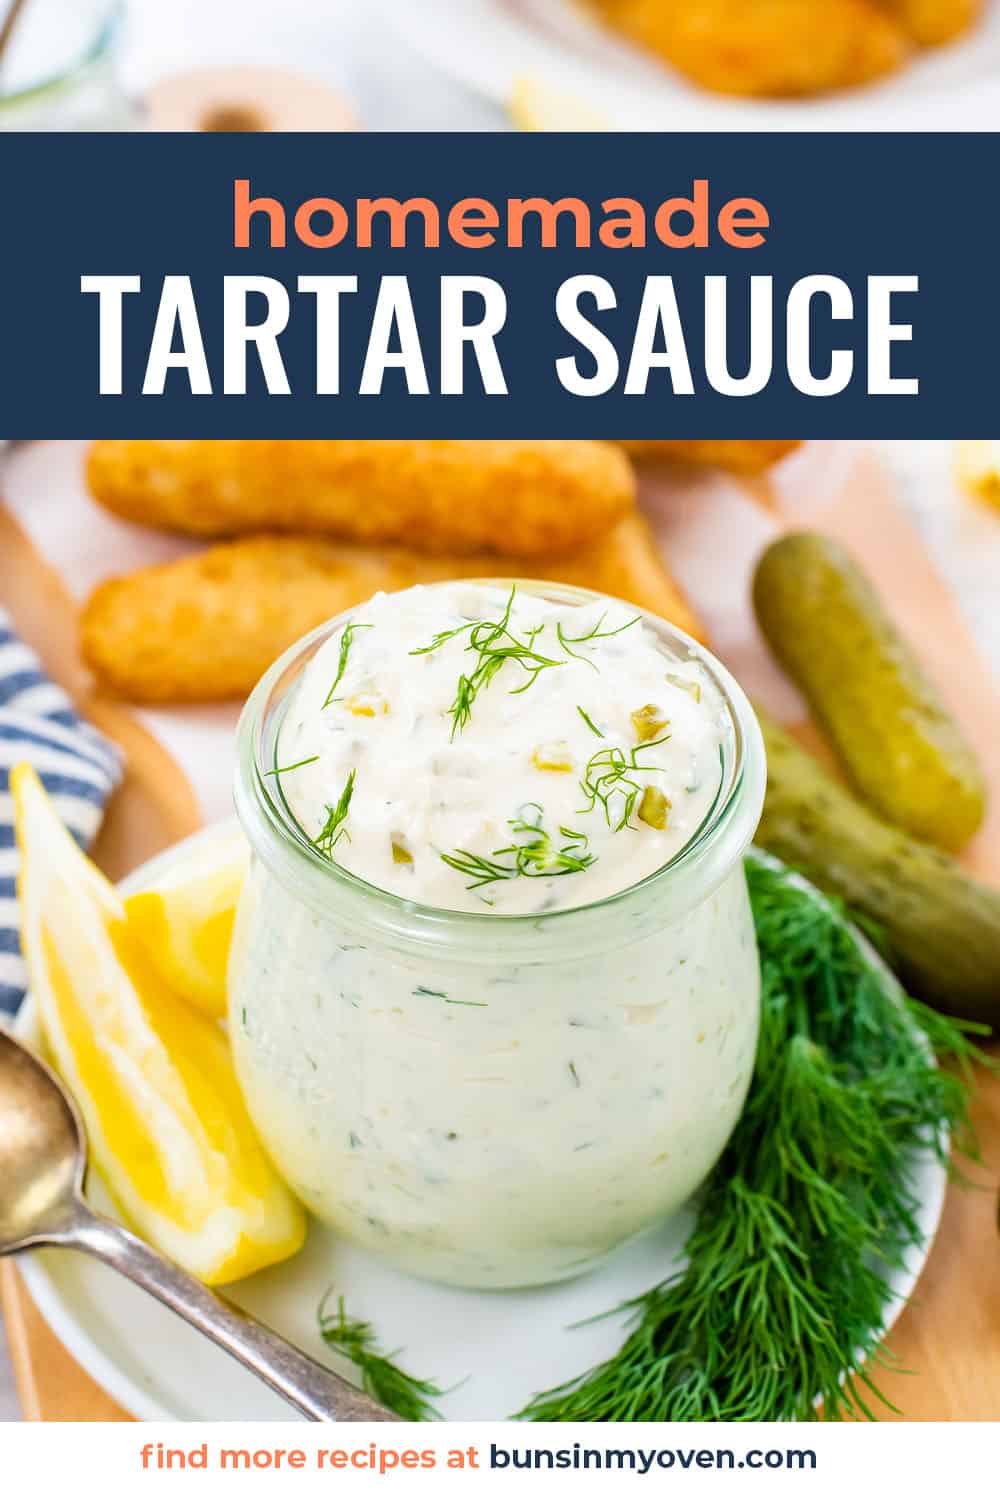 Tartar sauce in small glass jar.